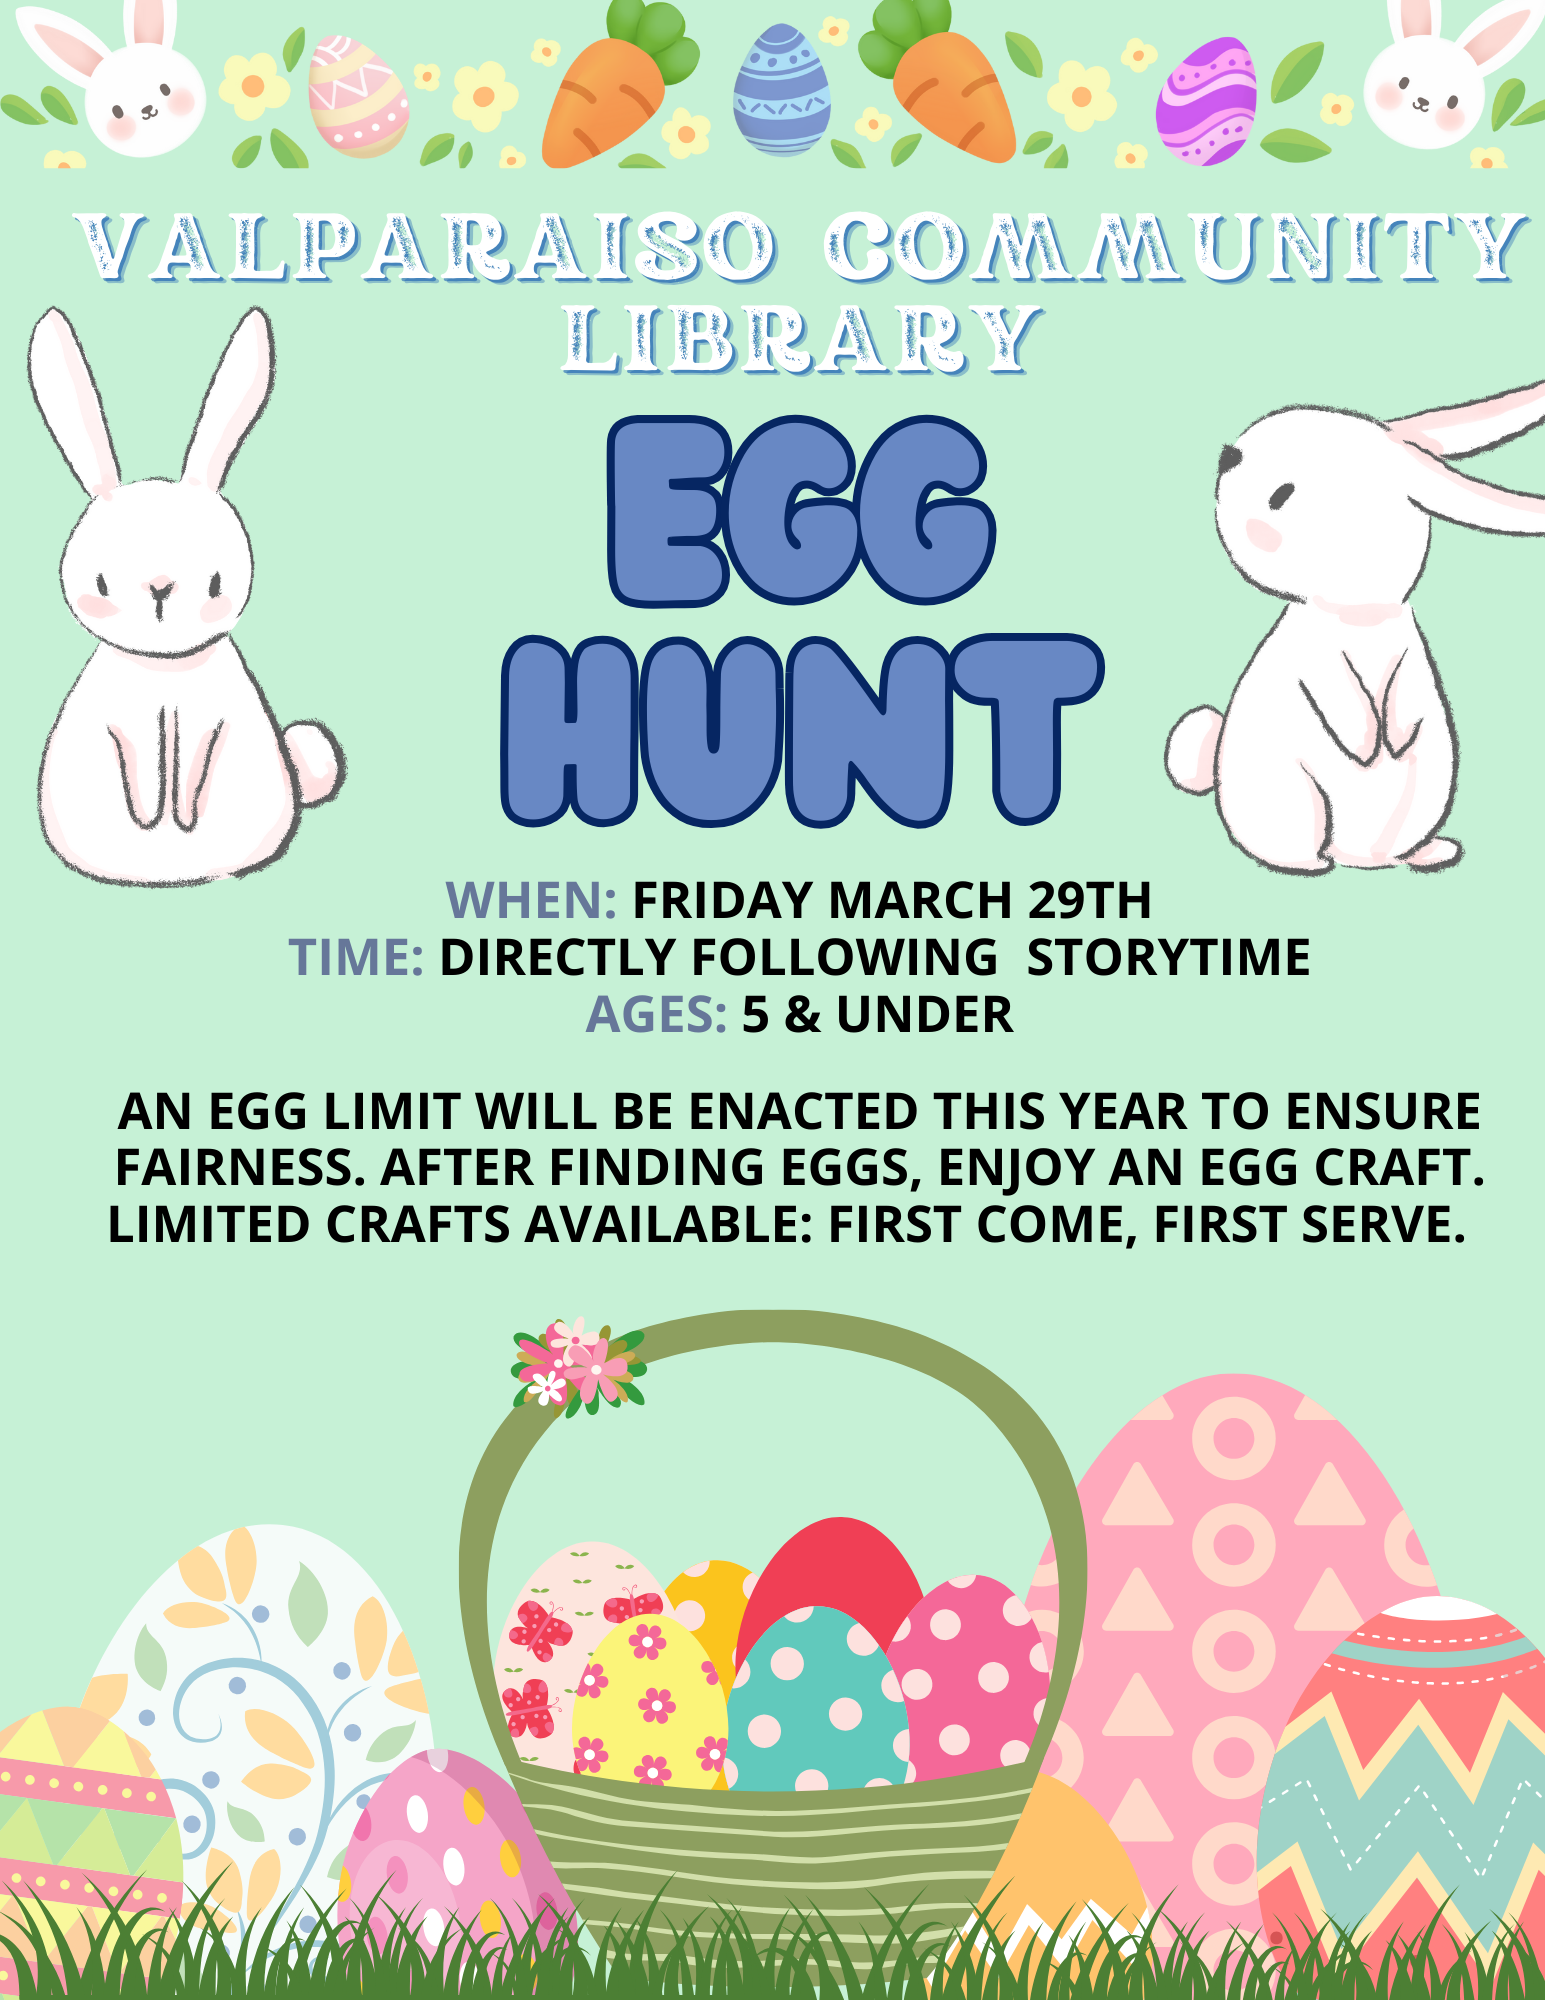 Egg Hunt Storytime